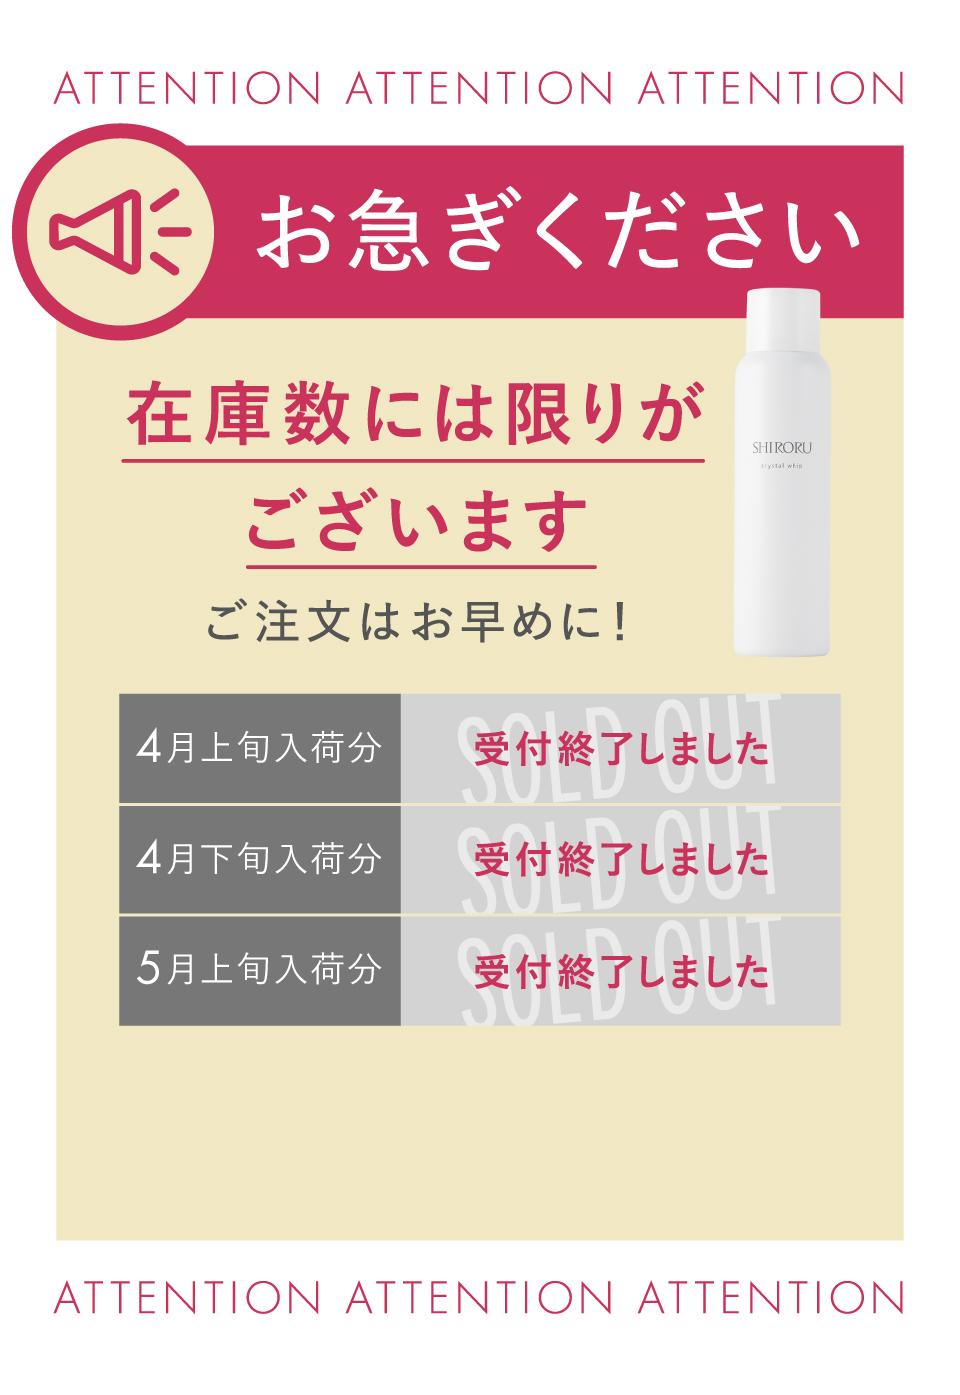 公式】SHIRORU「クリスタルホイップ」高濃度炭酸泡洗顔」